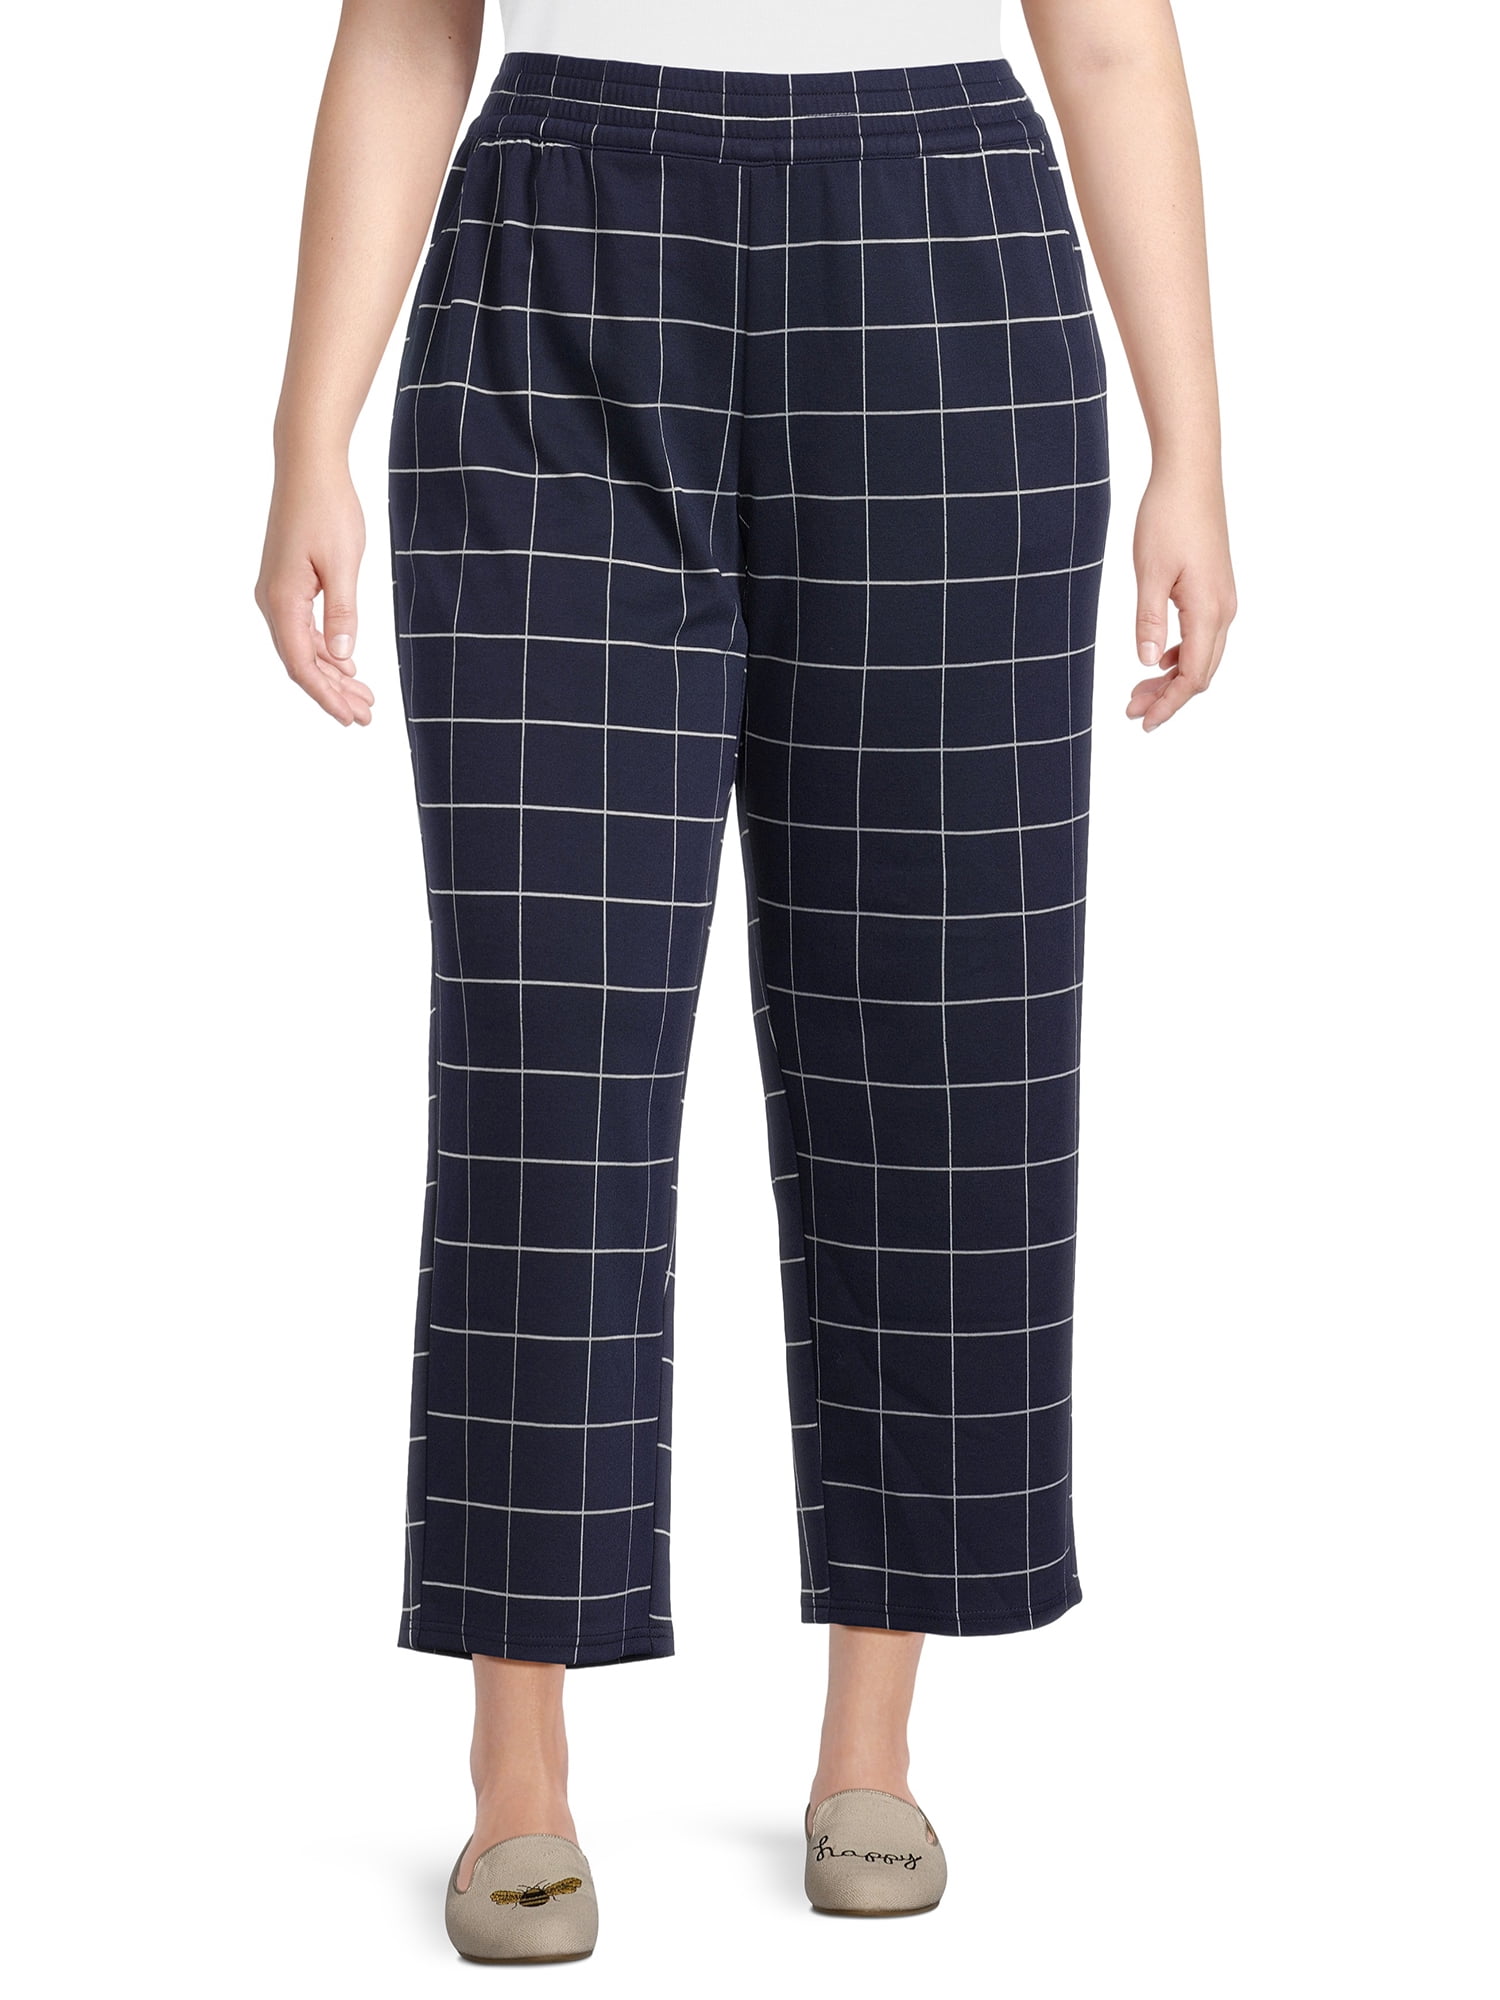 Terra & Sky Women's Plus Size Knit Work Pants, 30” Inseam